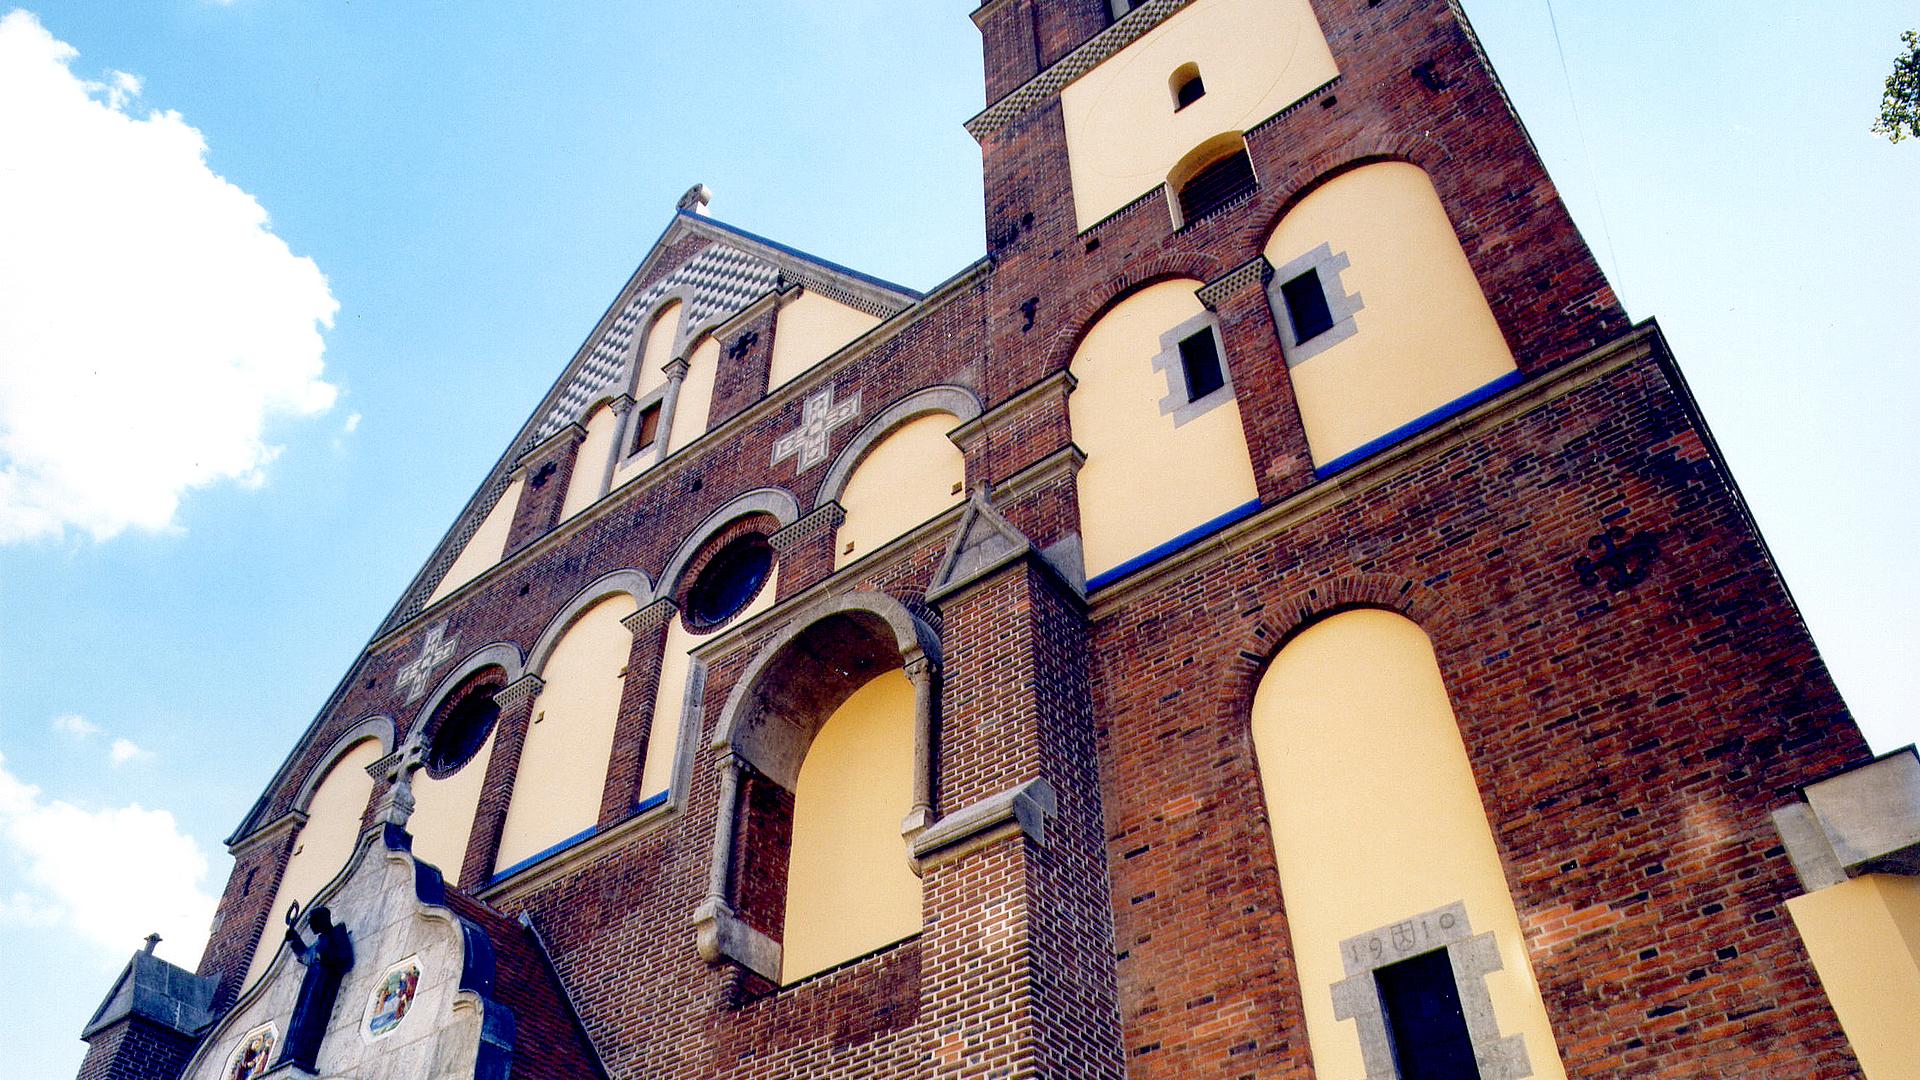 Bild: Instandsetzung und Restaurierung der Pfarrkirche St. Anton - Ostansicht